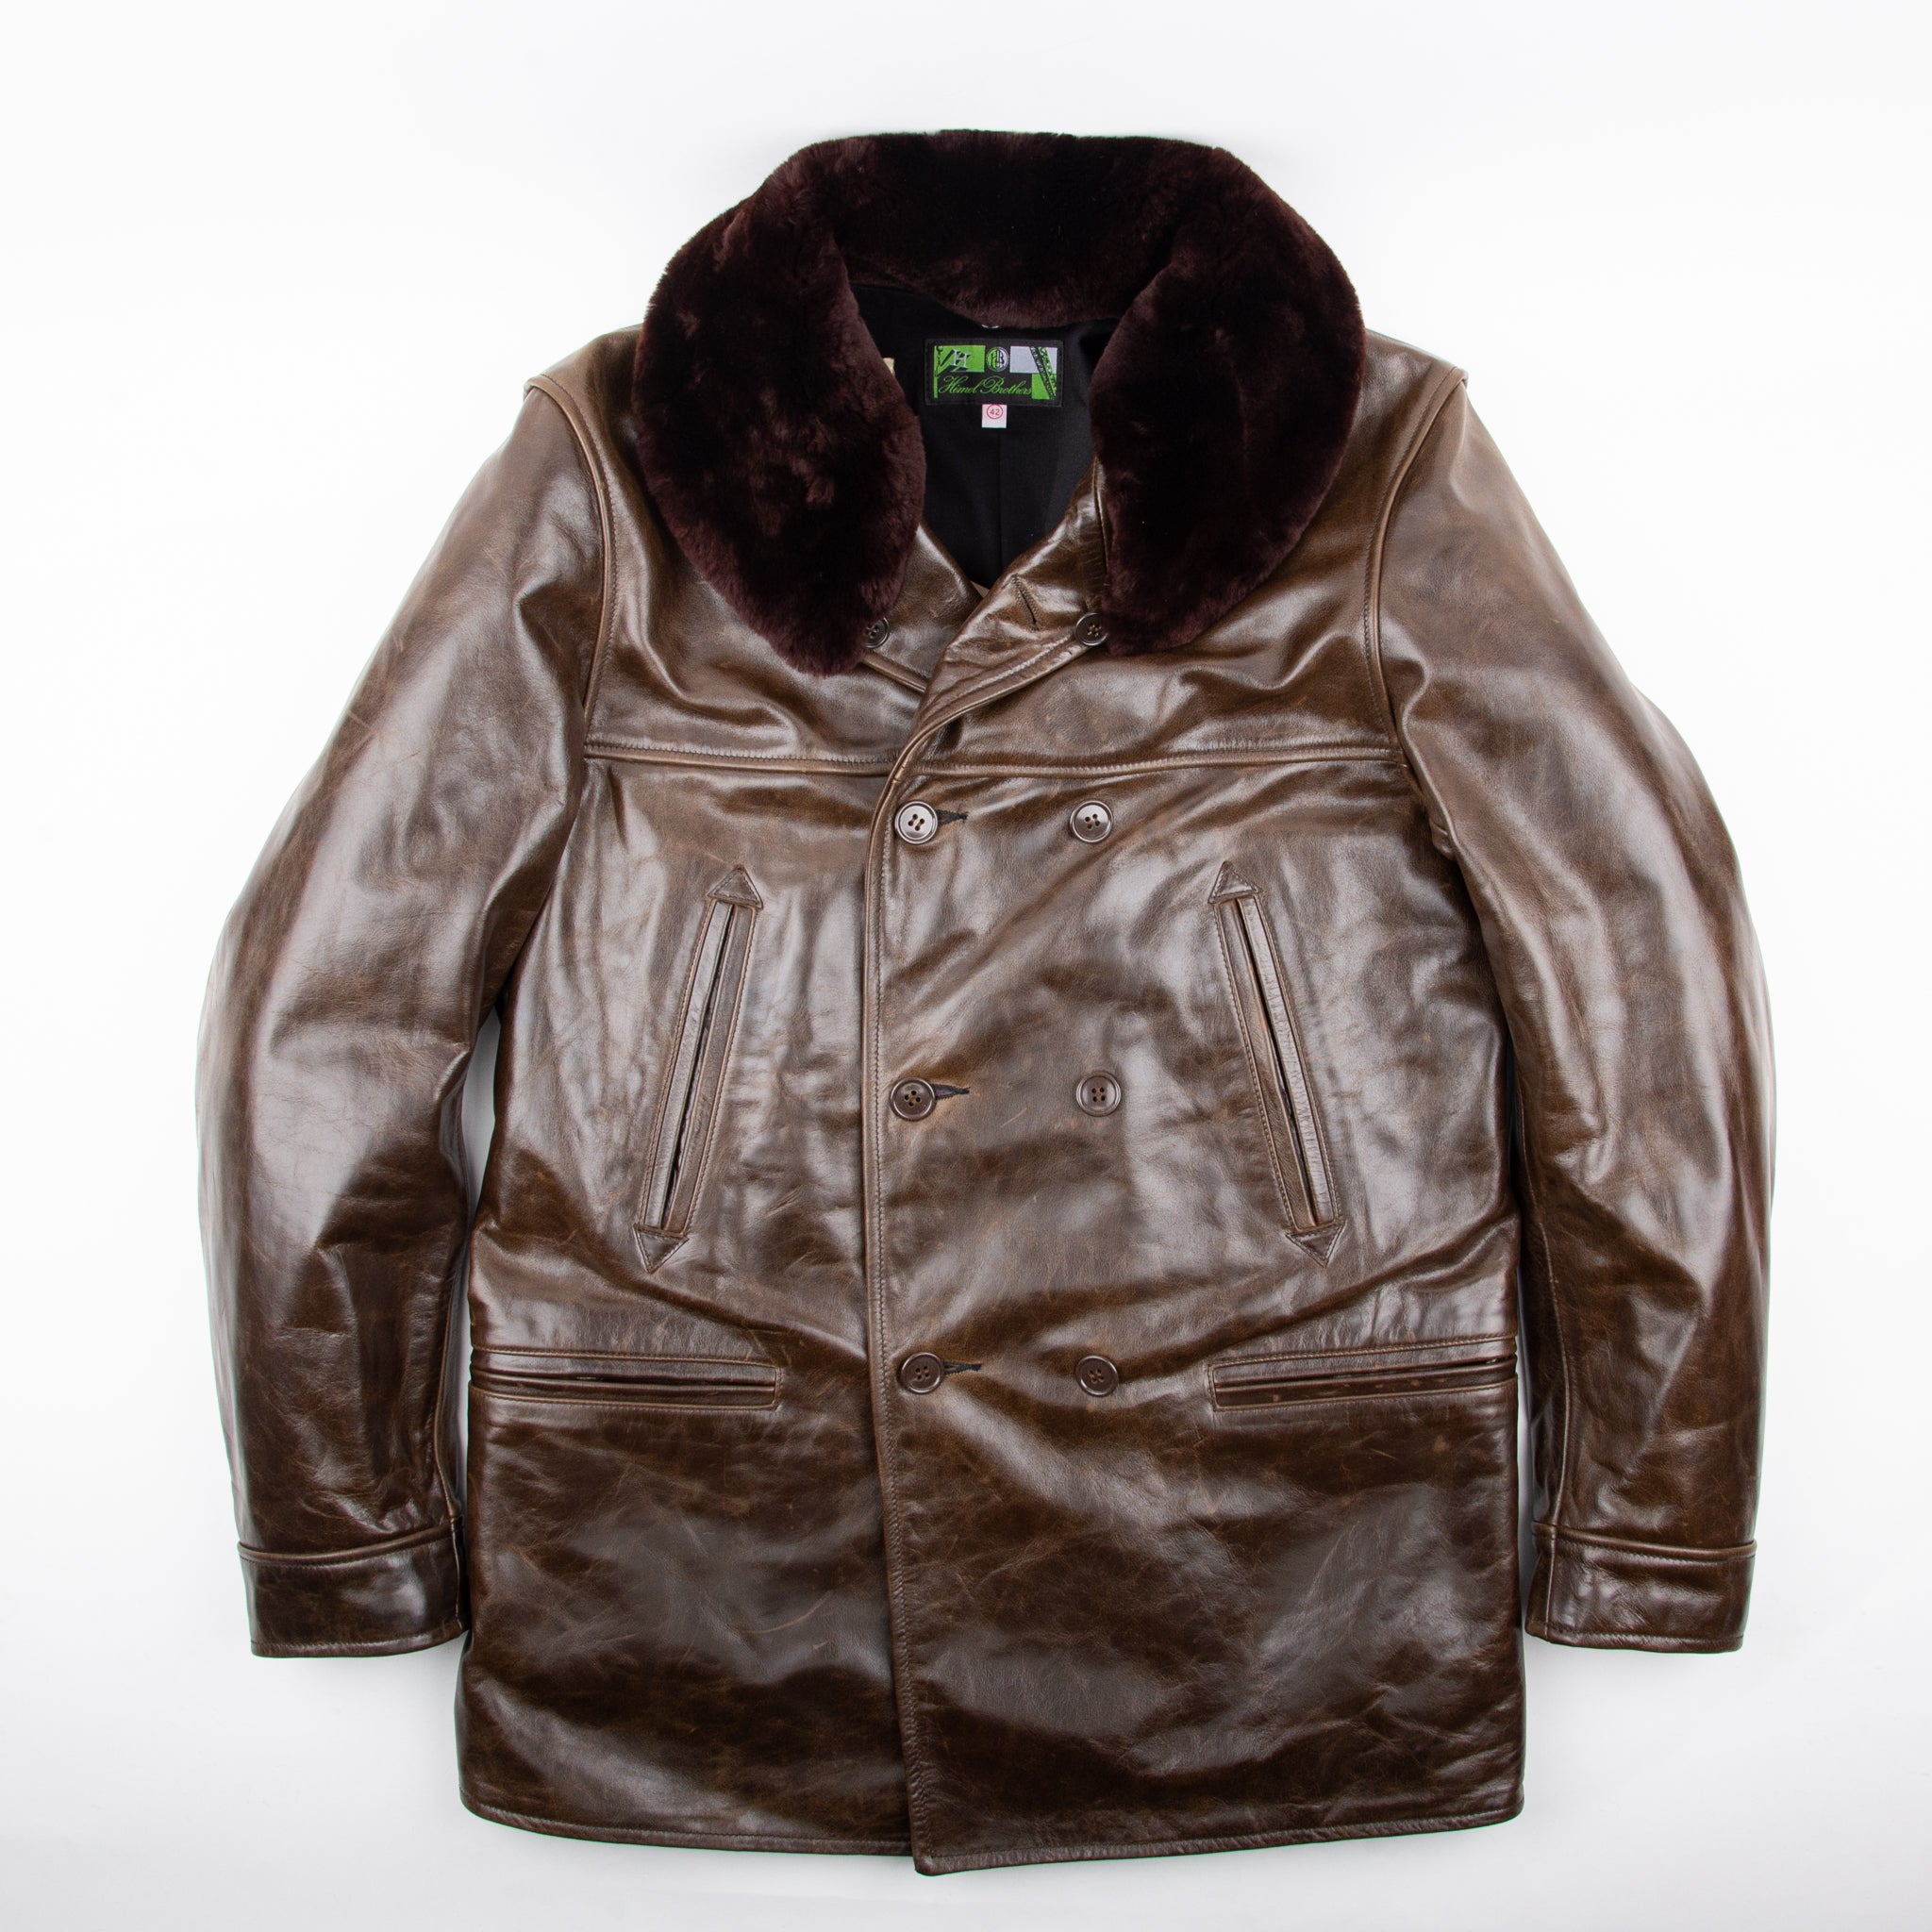 Himel Bros x Freenote Cloth Chinook Jacket <span> Black Oak American Steerhide</span>